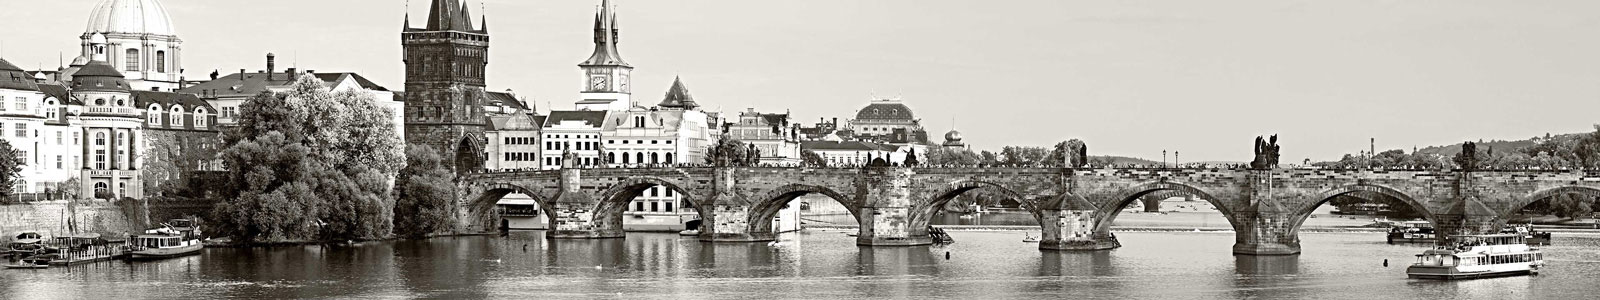 №4389 - Мост Чарльза в Праге